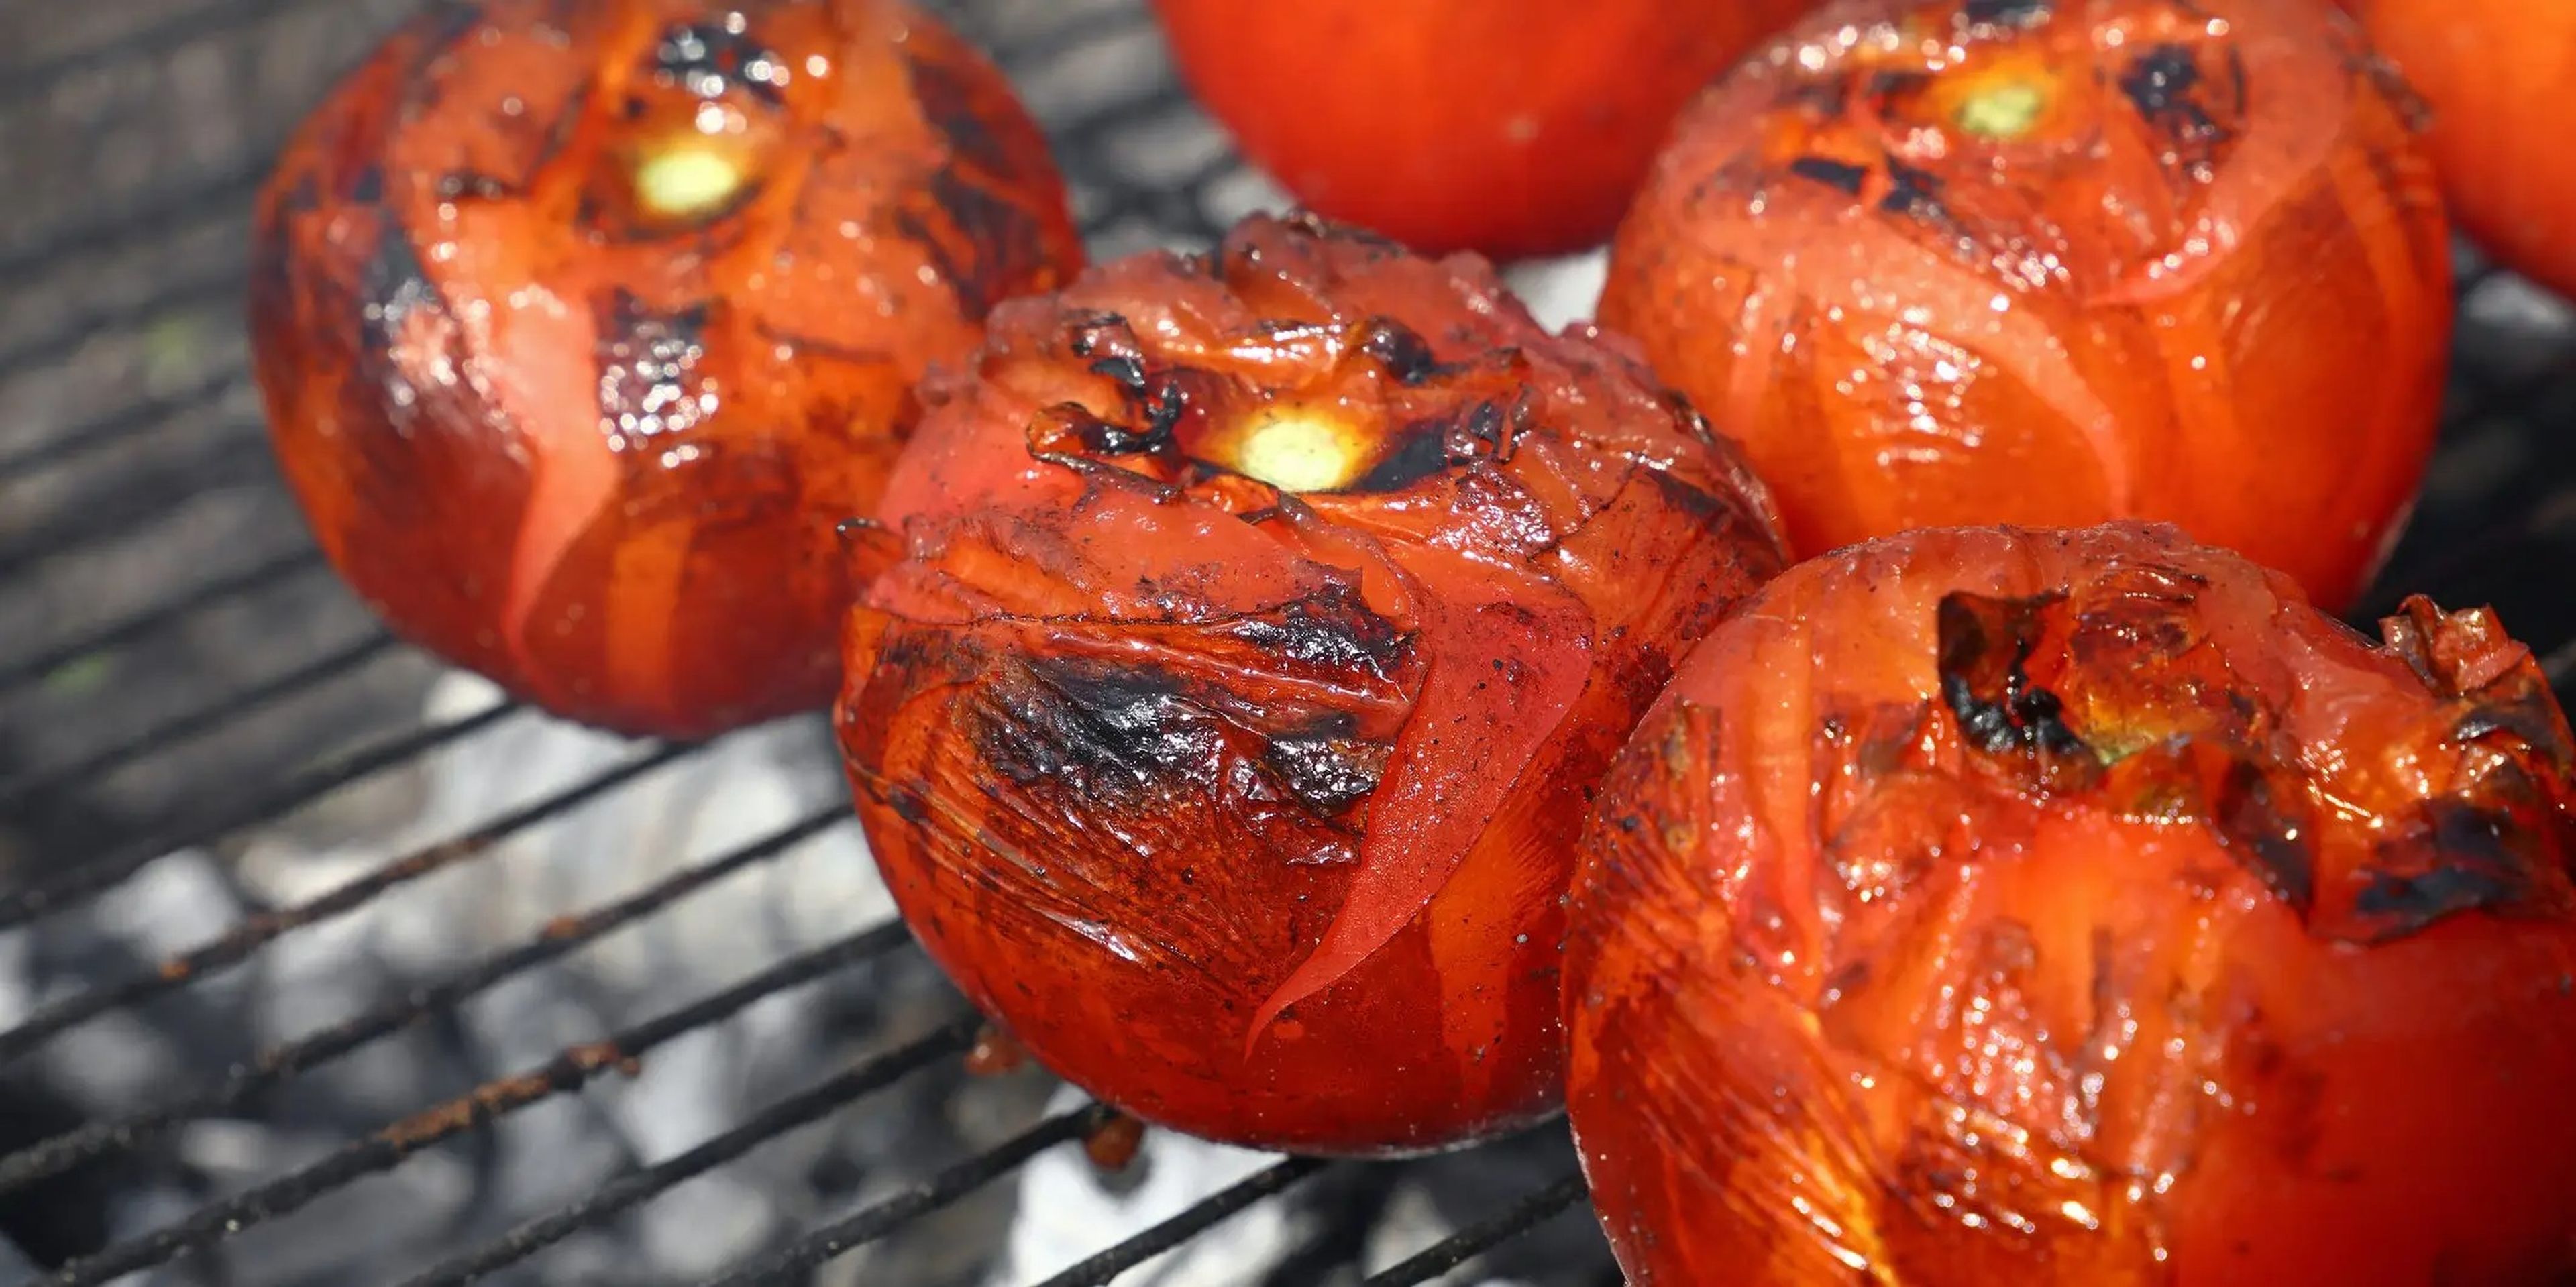 Los tomates asados contienen antioxidantes más potentes con propiedades antiinflamatorias que los tomates crudos.